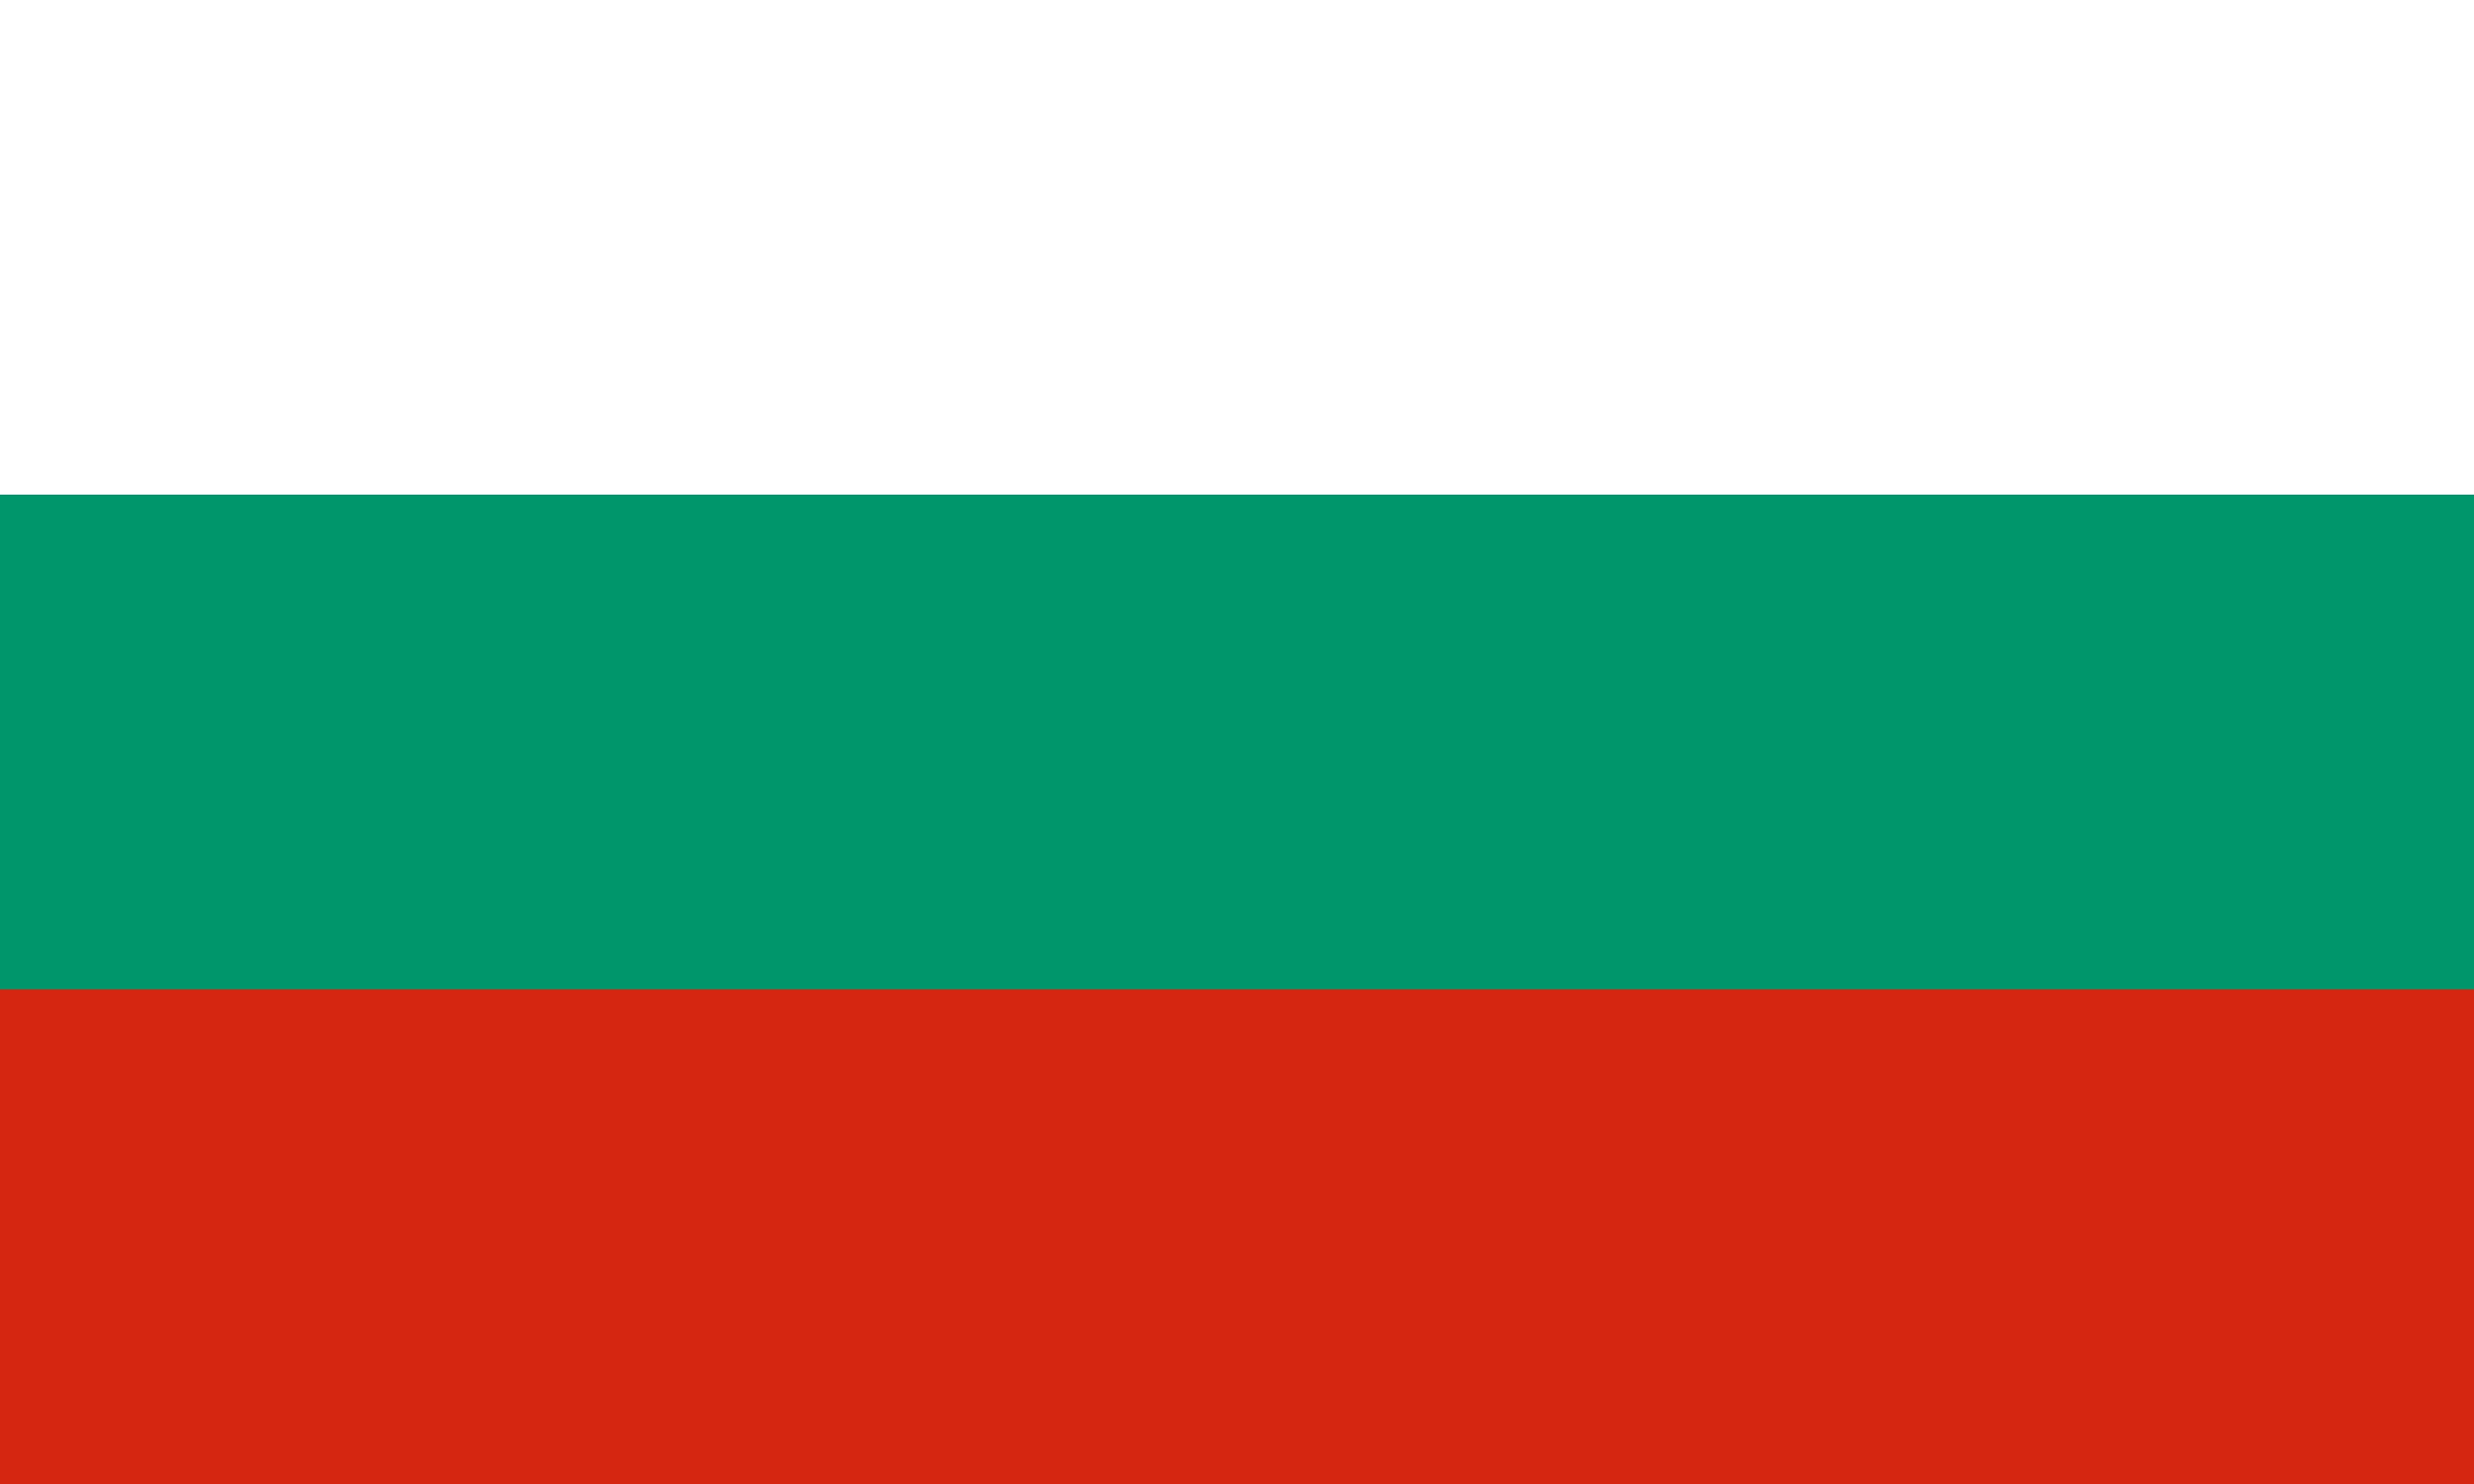 Stáhnout - Bulharská vlajka | Statnivlajky.cz